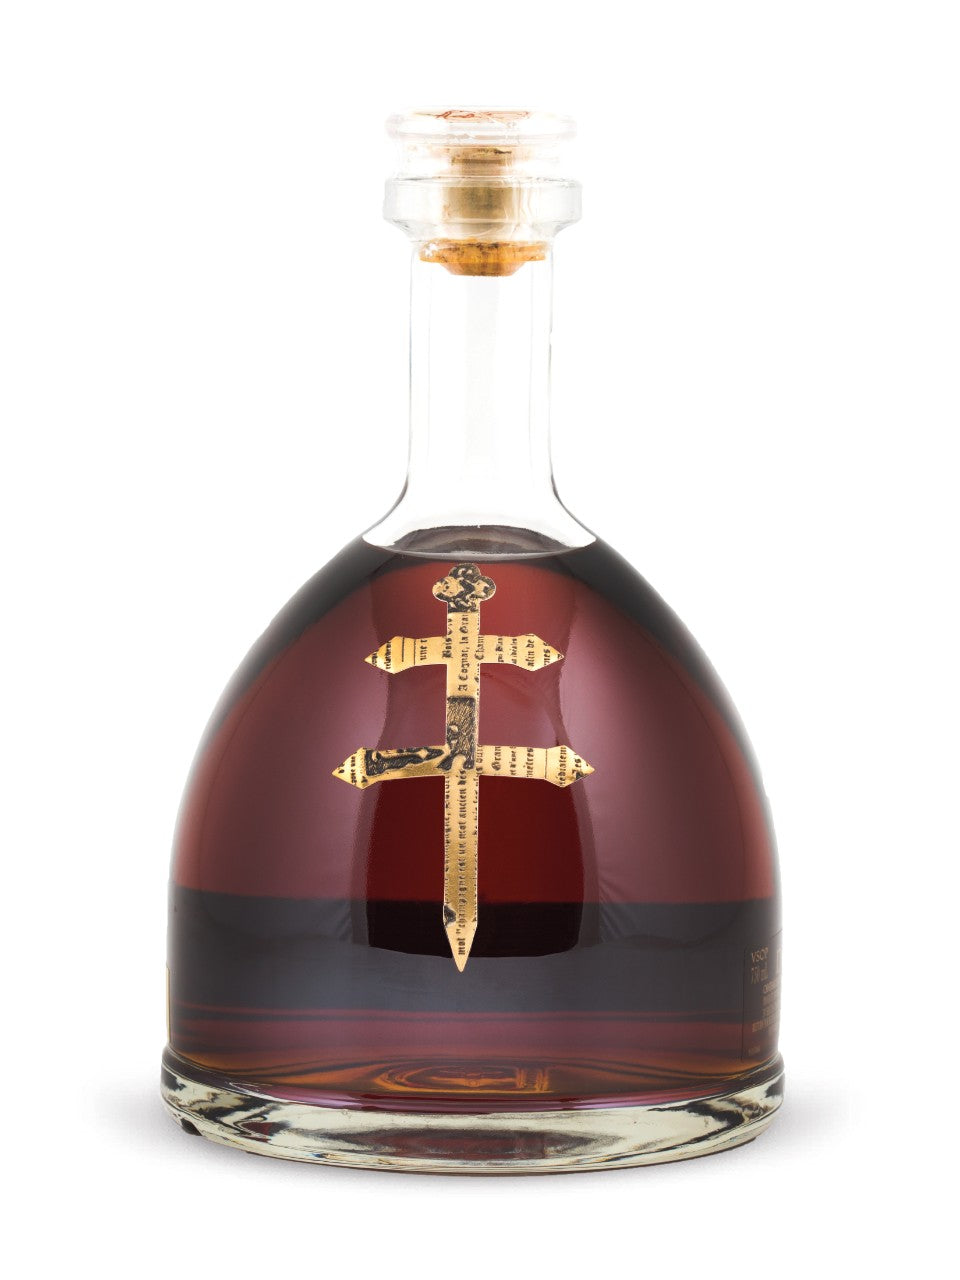 D'Ussé VSOP Cognac 750 mL bottle